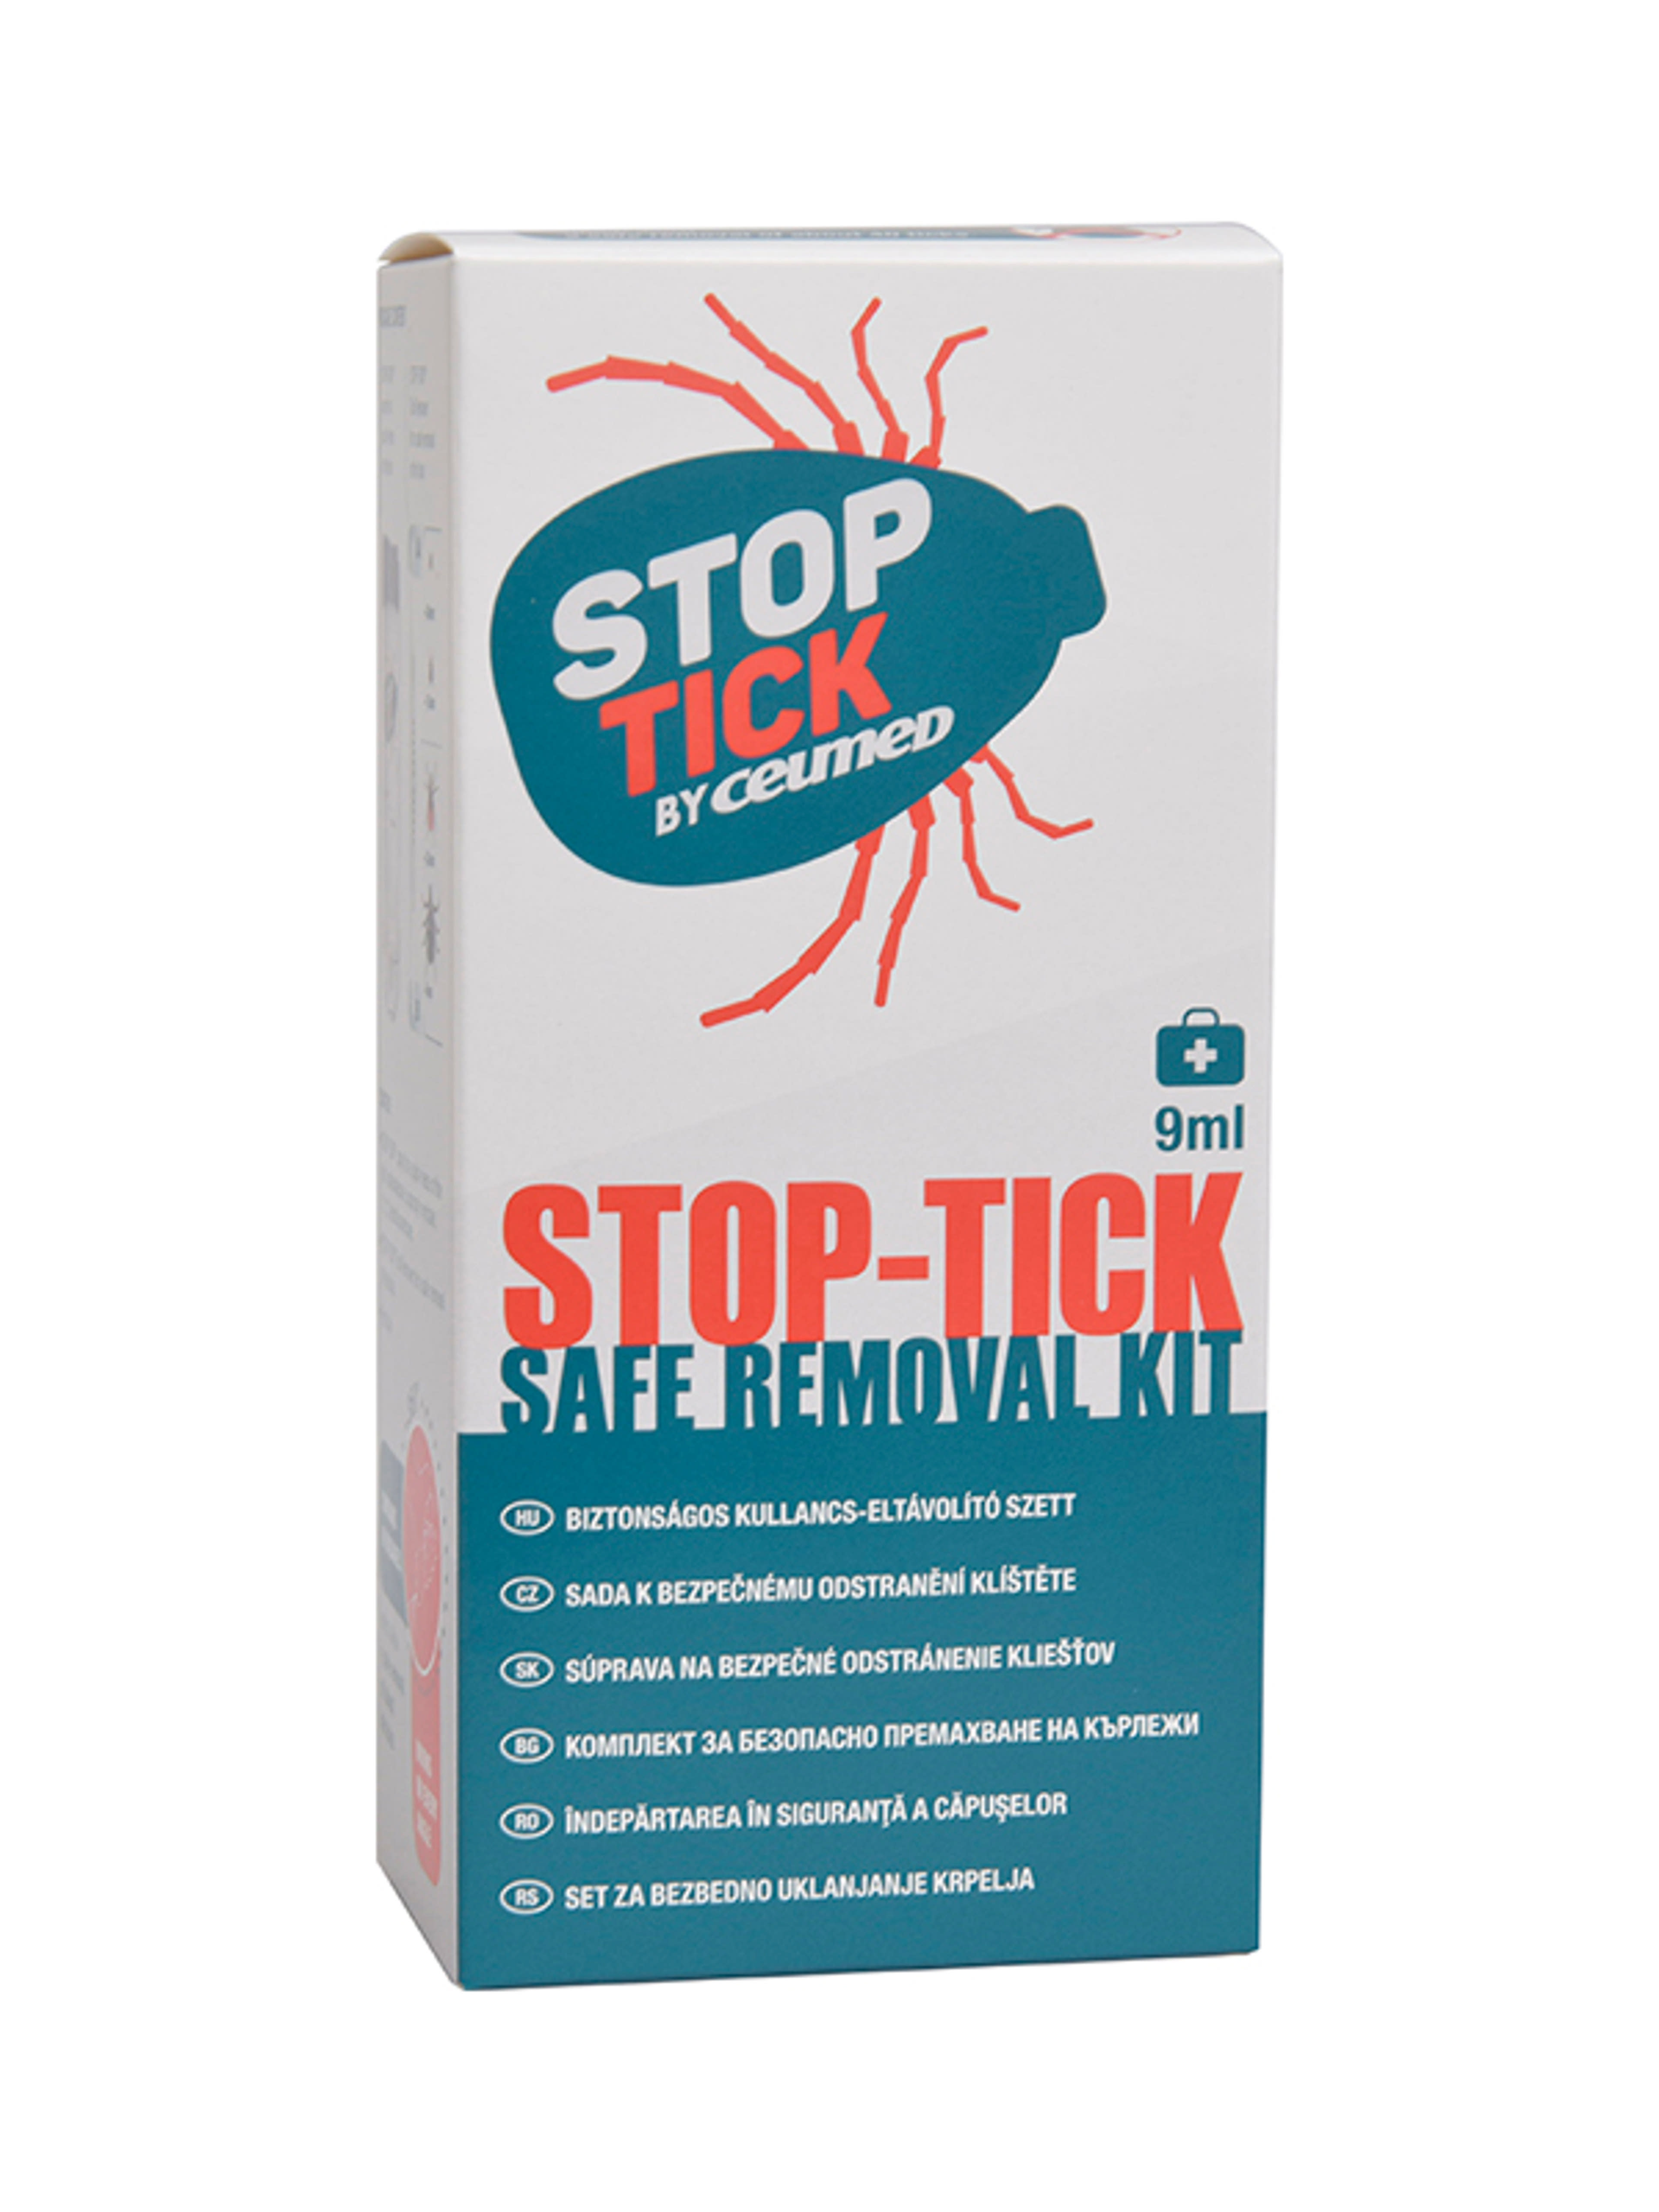 Stop-tick biztonságos kullancs-eltávolító szett - 9 ml-1